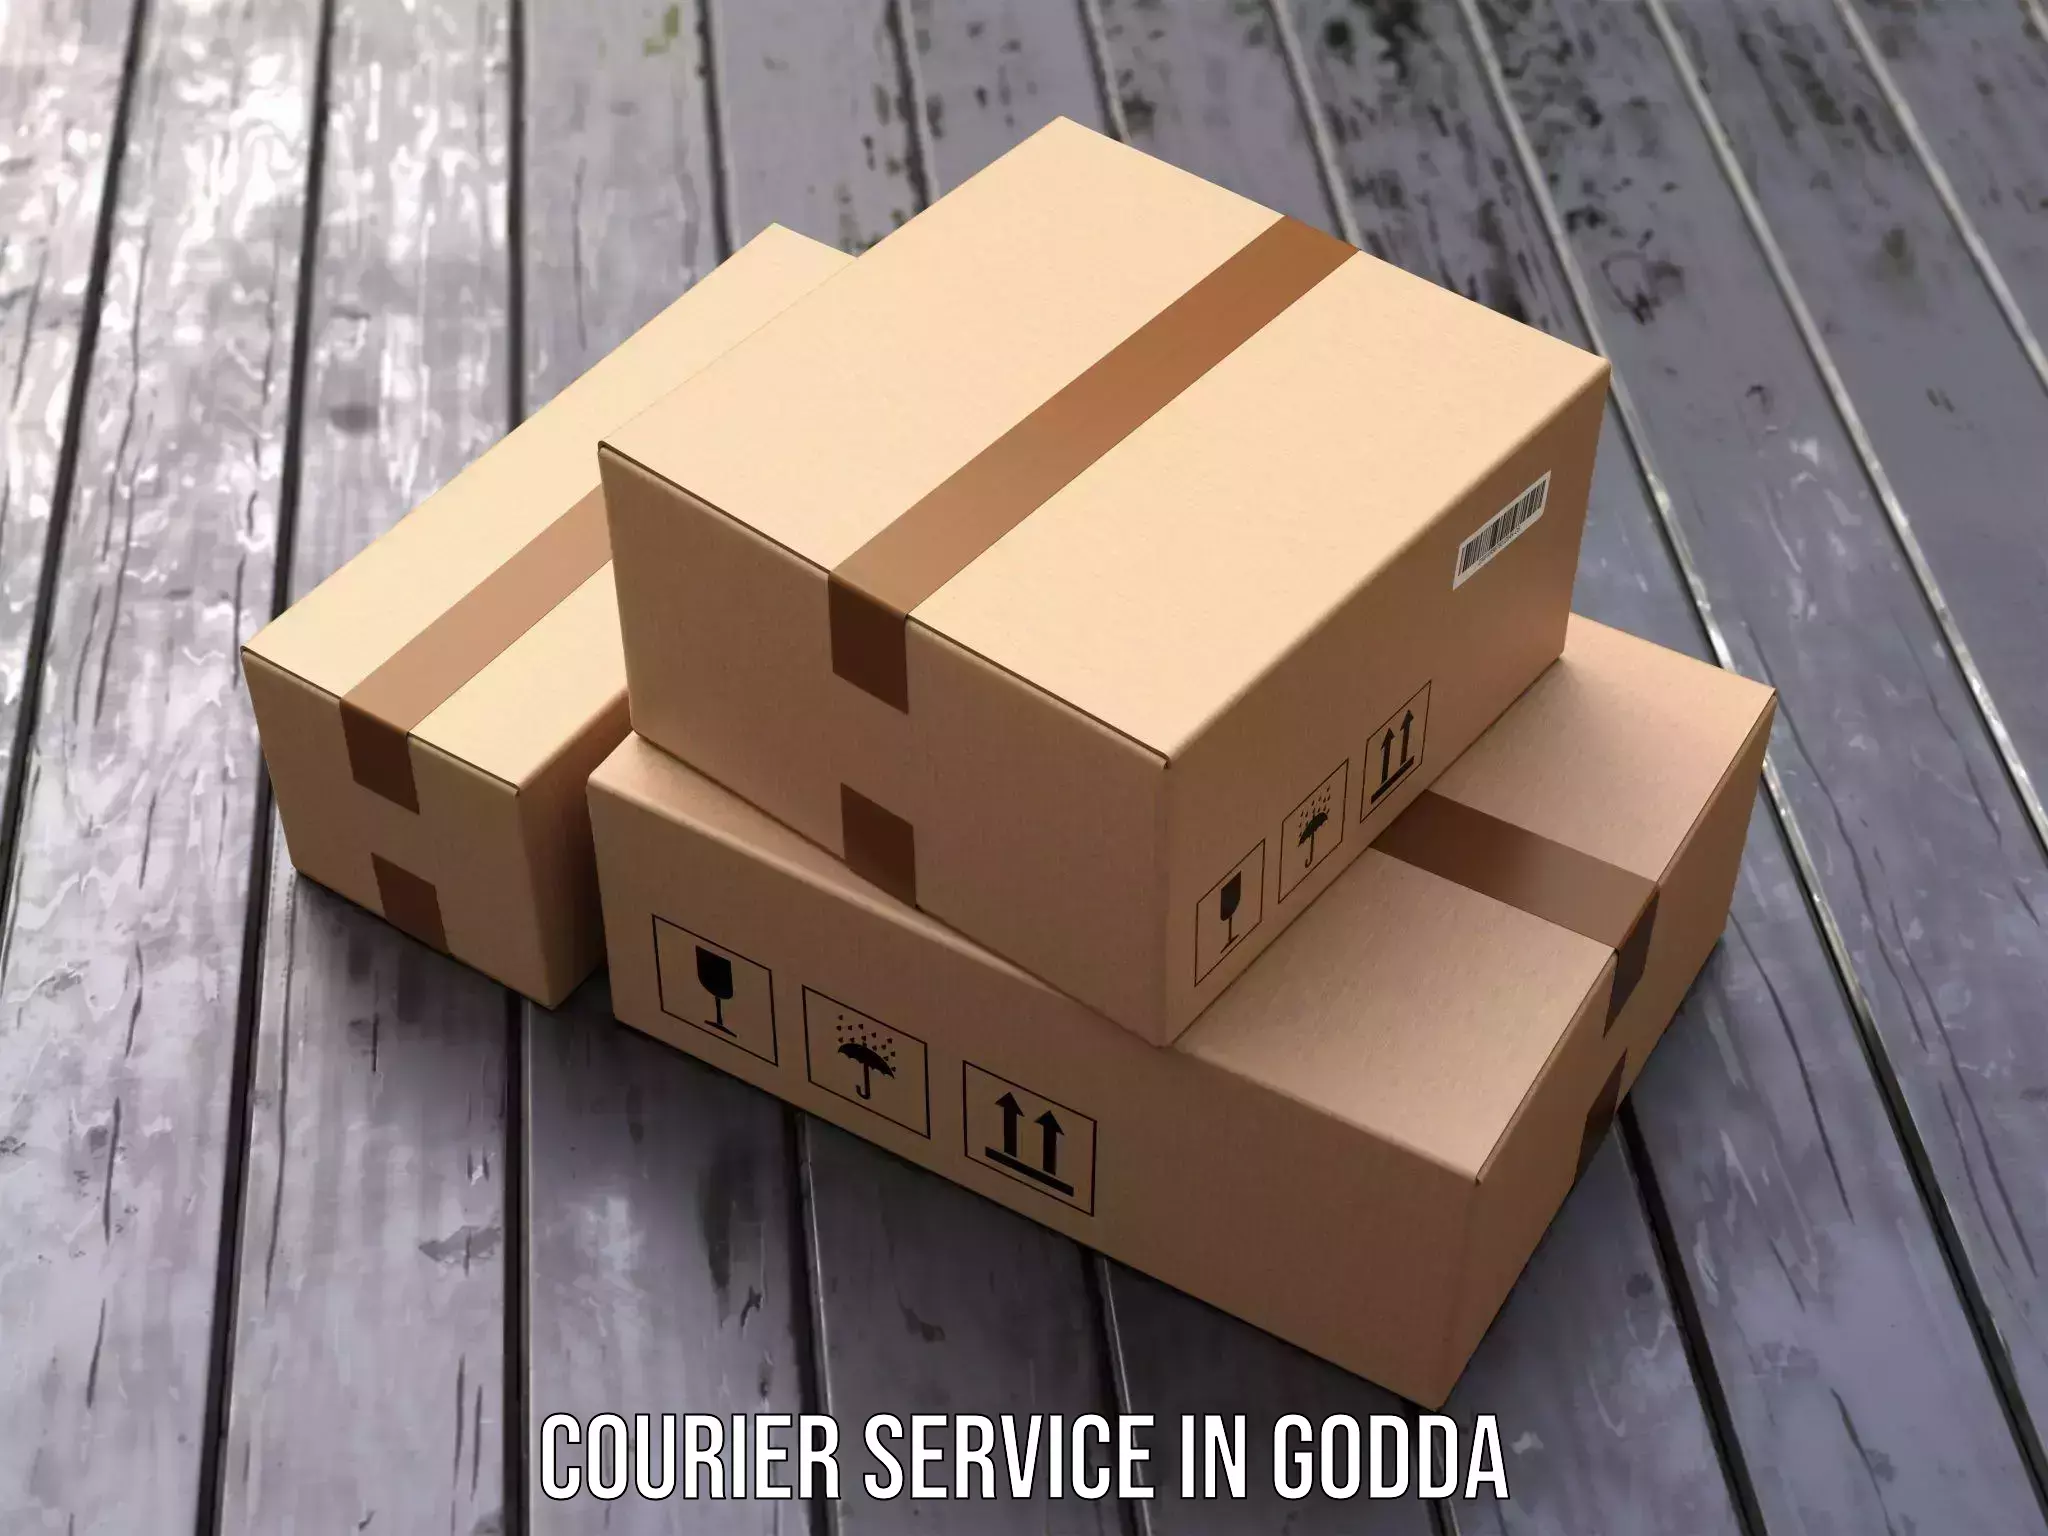 Fast shipping solutions in Godda